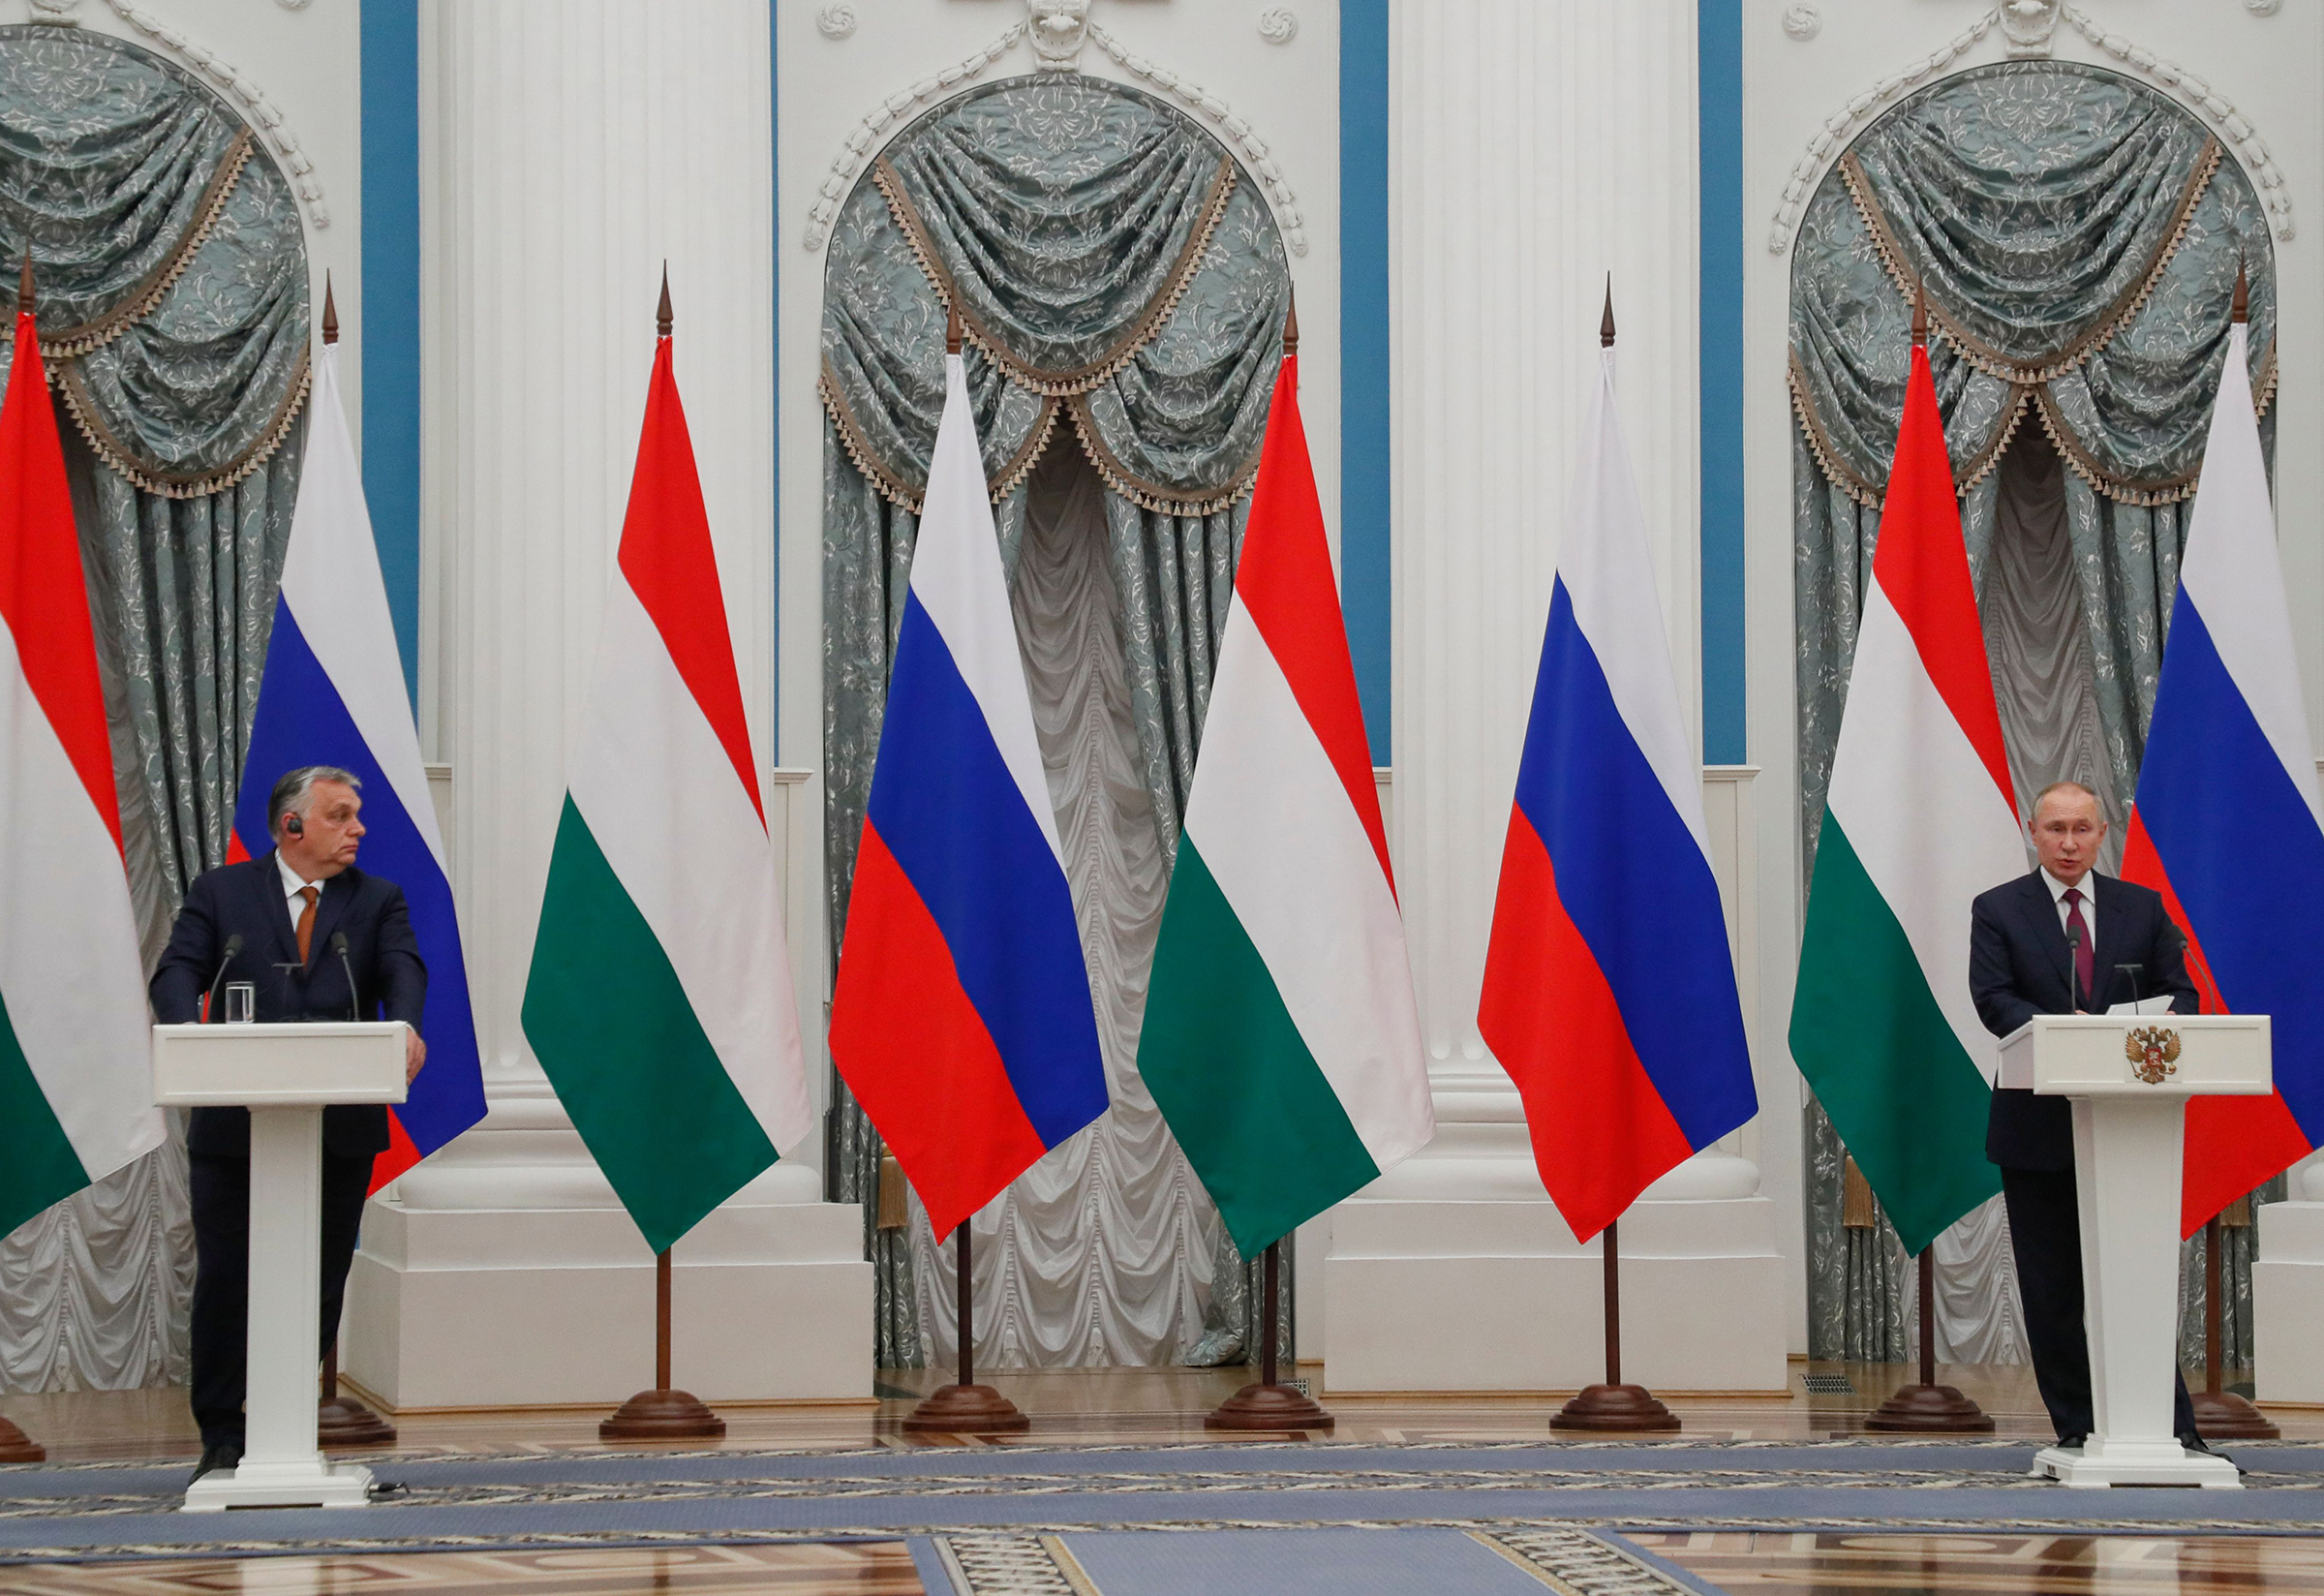 Hungarian Prime Minister Viktor Orban, left, and Russian President Vladimir Putin meet in the Moscow Kremlin on Feb 1 (Yuri Kochetkov—EPA-EFE/Shutterstock)